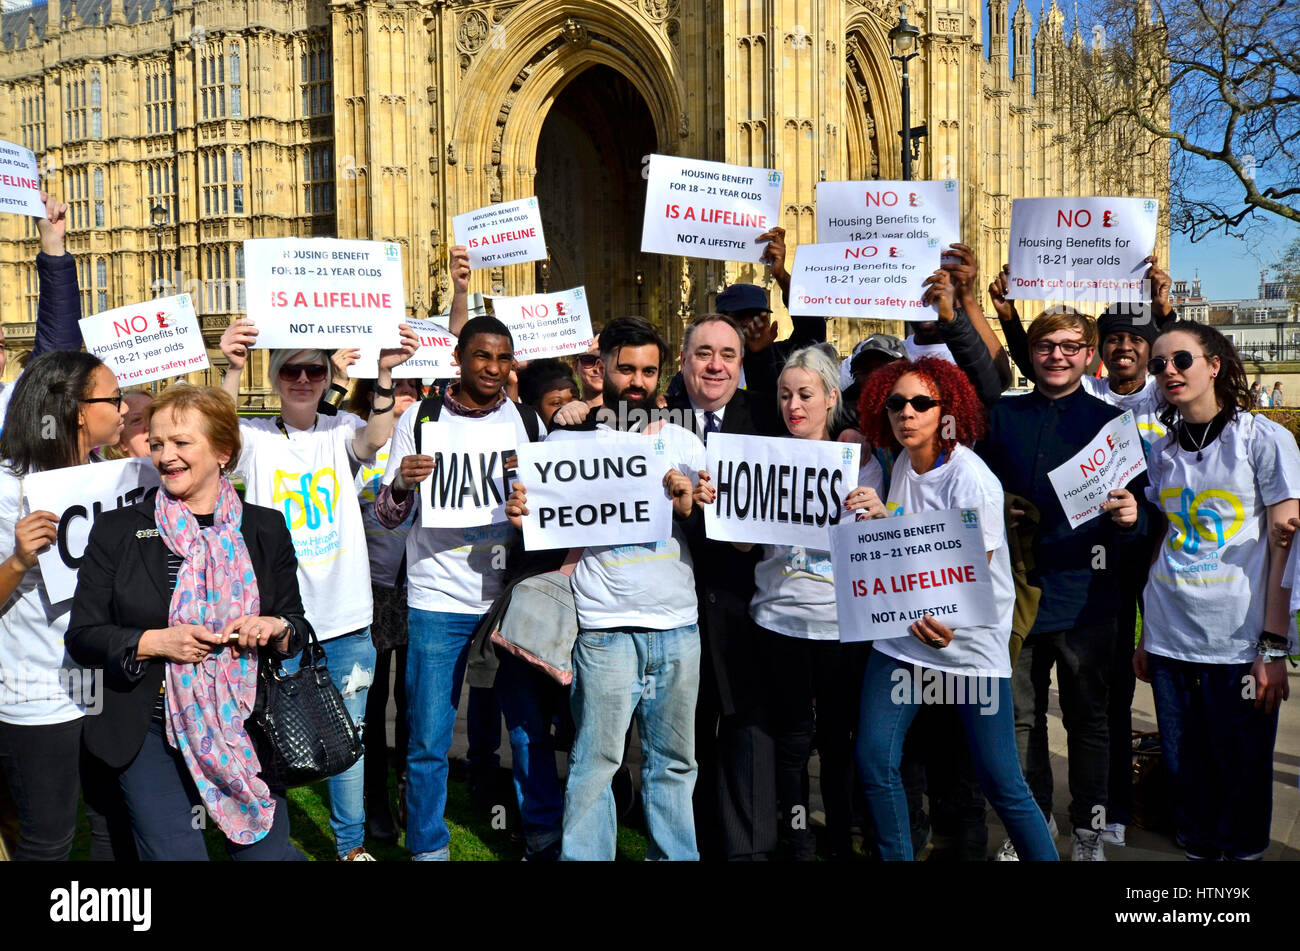 Londra, Regno Unito. 13 Mar, 2017. Alex Salmond MP è persuaso a unirsi a una manifestazione di protesta contro la scatola di taglio benefici ai giovani dopo che interrompono la sua intervista in TV. Credito: PjrFoto/Alamy Live News Foto Stock